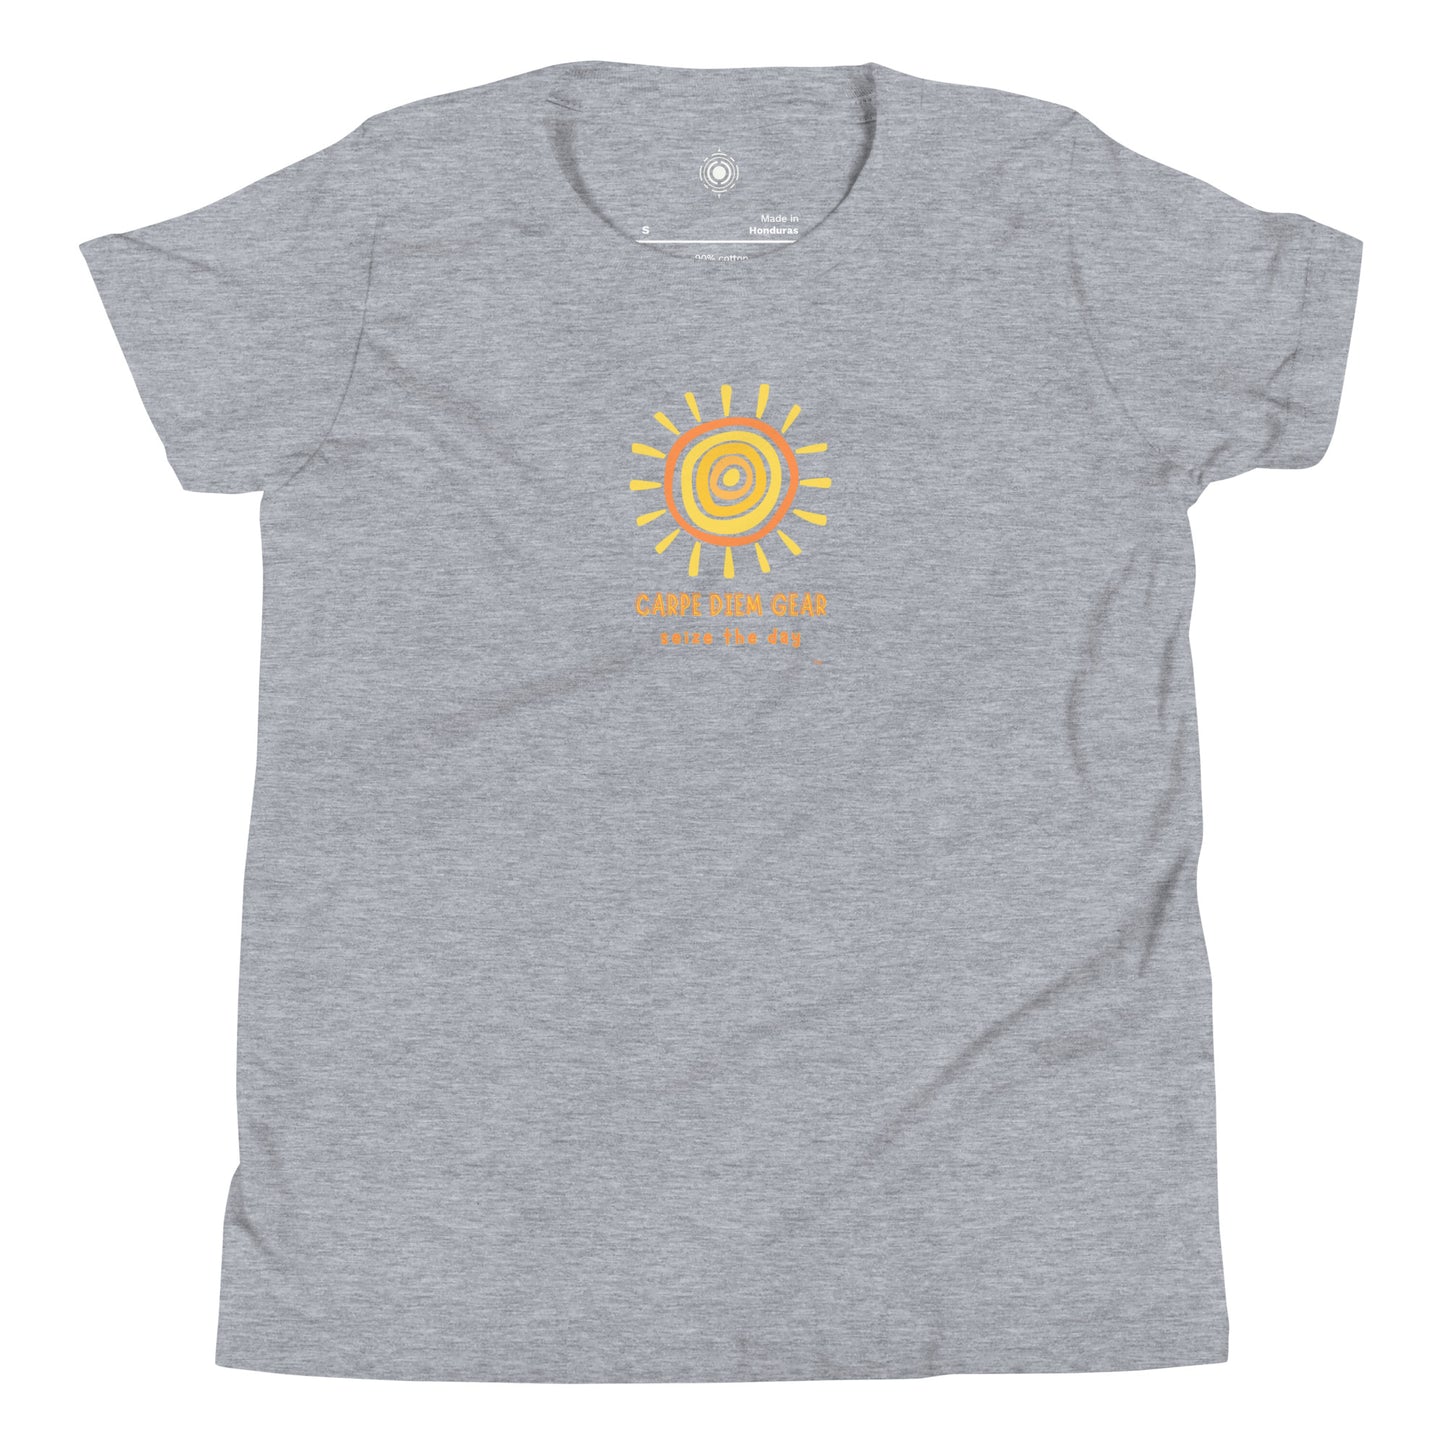 Carpe Diem Gear | Kid's Club | Sunshine | Youth 100% Ring-Spun Cotton Short Sleeve T-Shirt